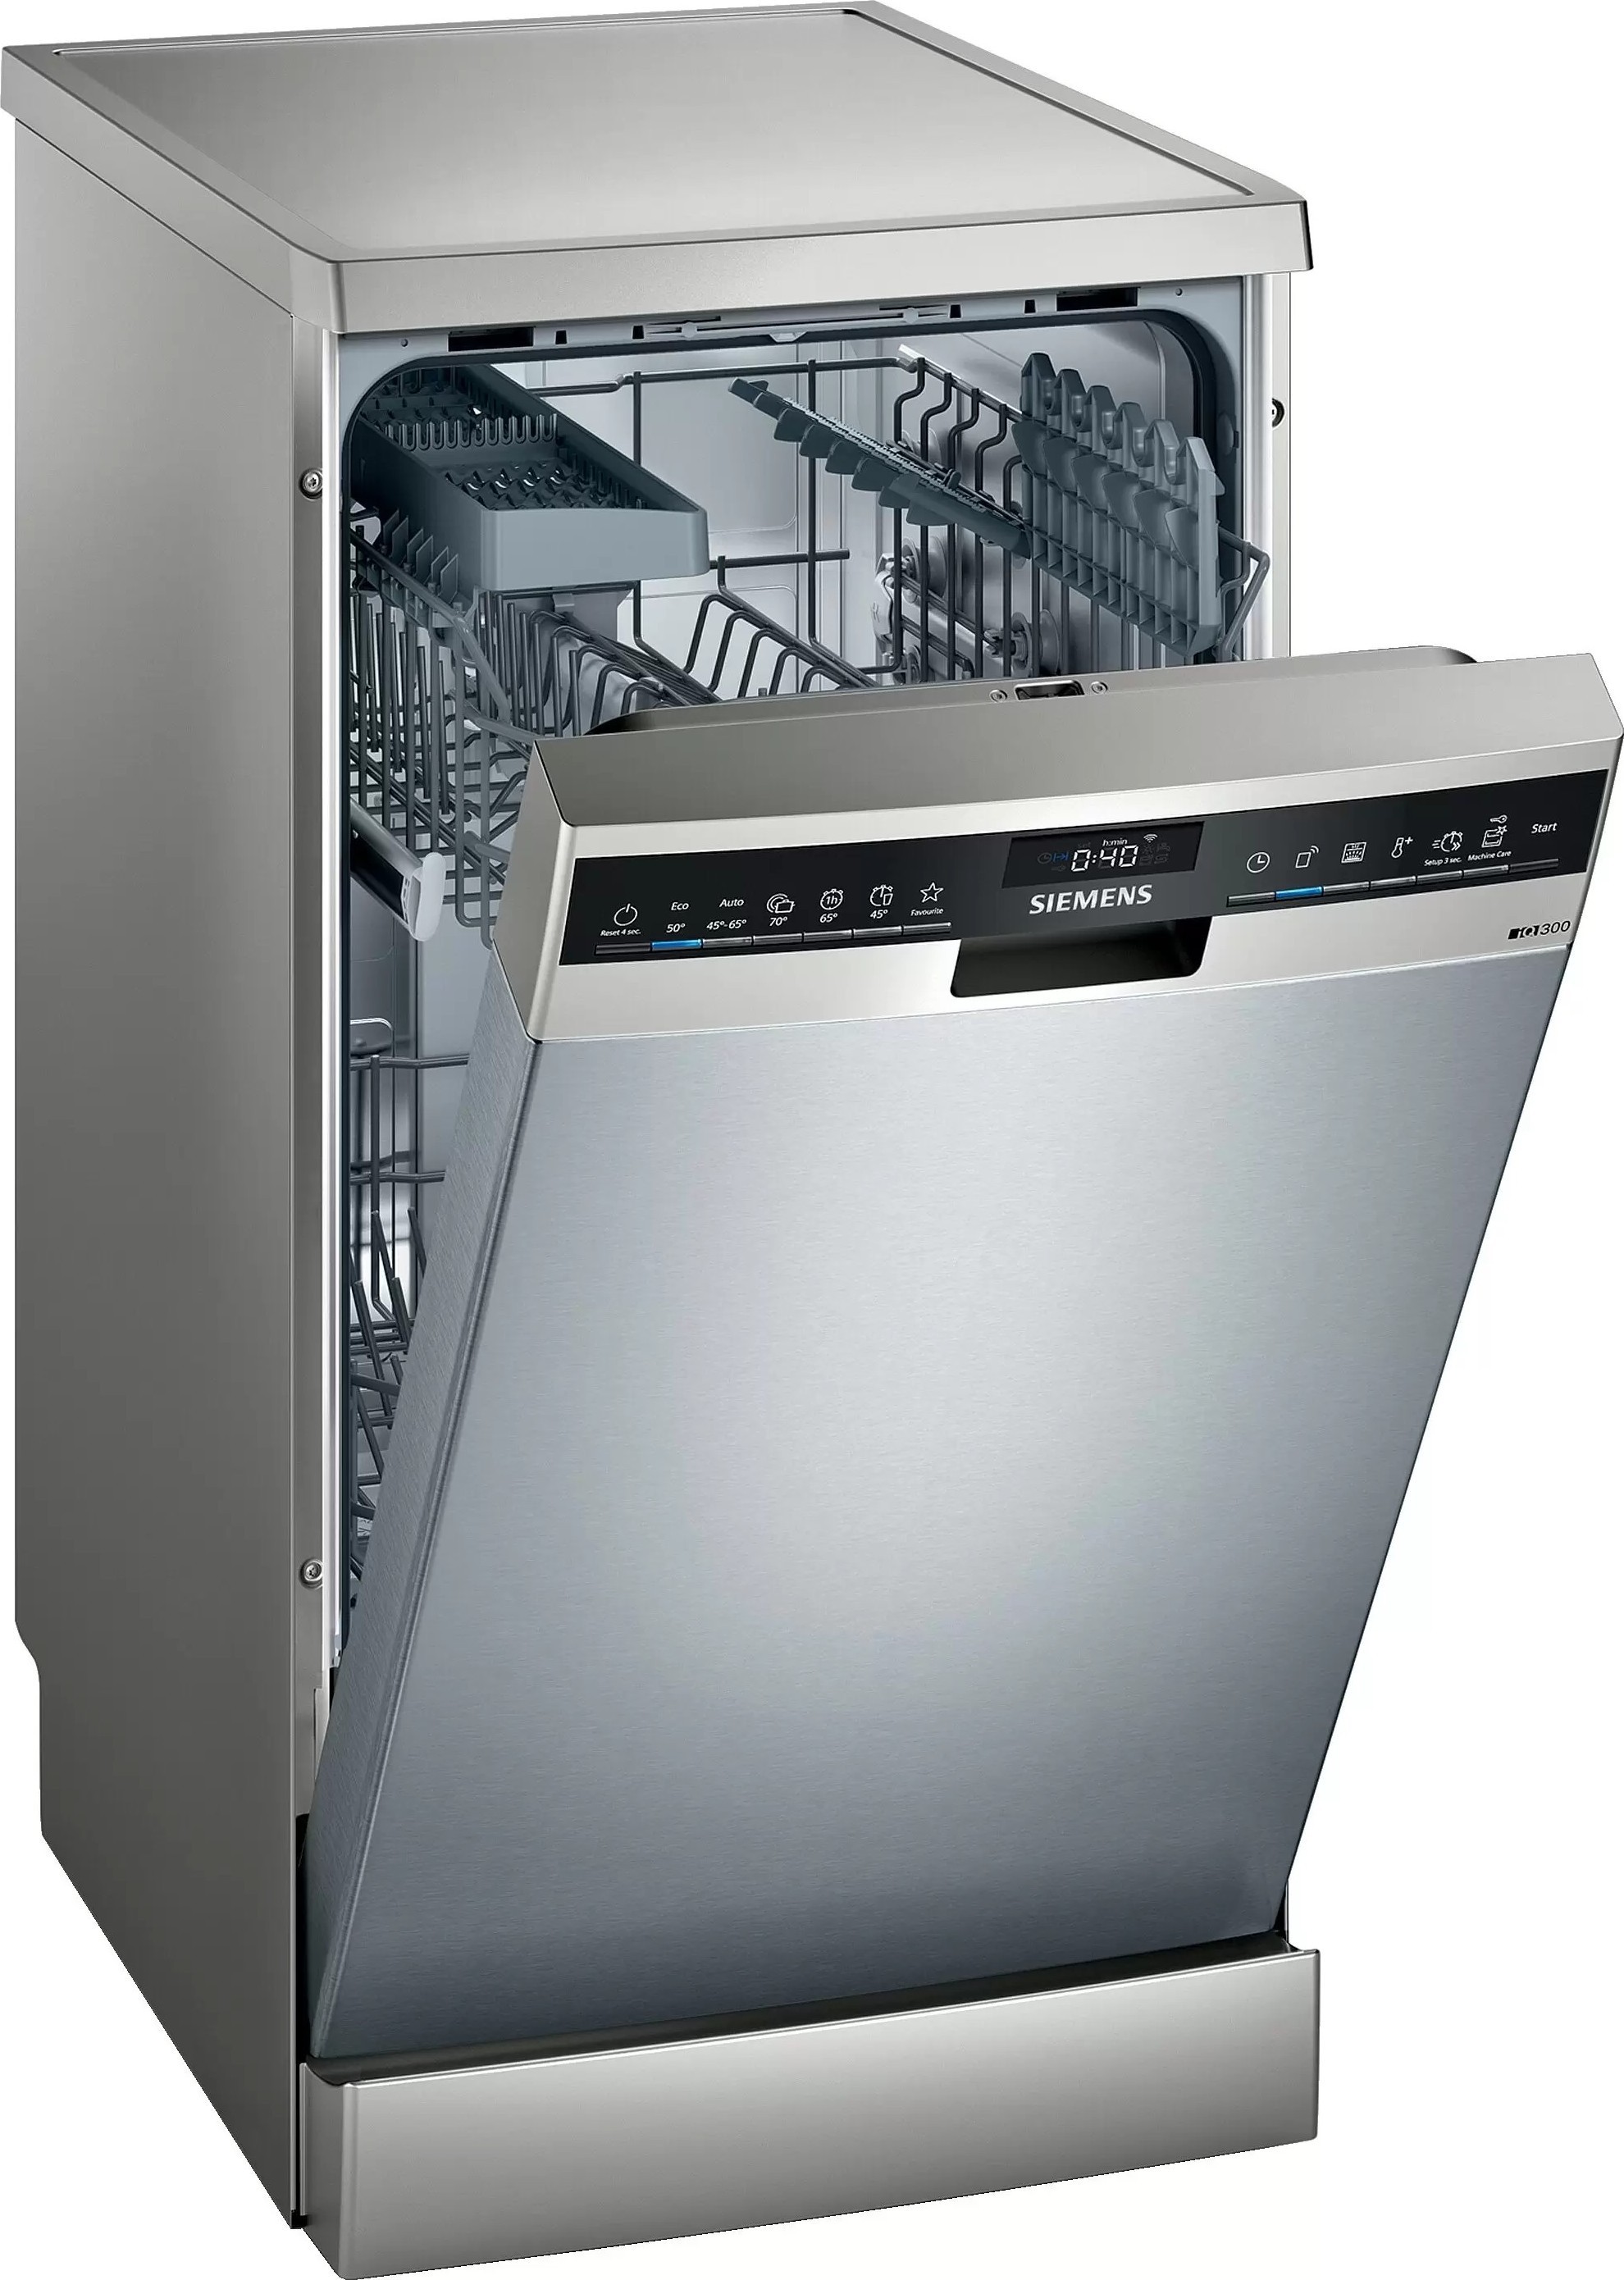 Окпд 2 посудомоечная машина. Посудомоечная машина Siemens SR 25m884. Посудомоечная машина Siemens iq500 SR 256i00 te. Посудомоечная машина Siemens SR 25e207. Посудомоечная машина Siemens SF 24e234.